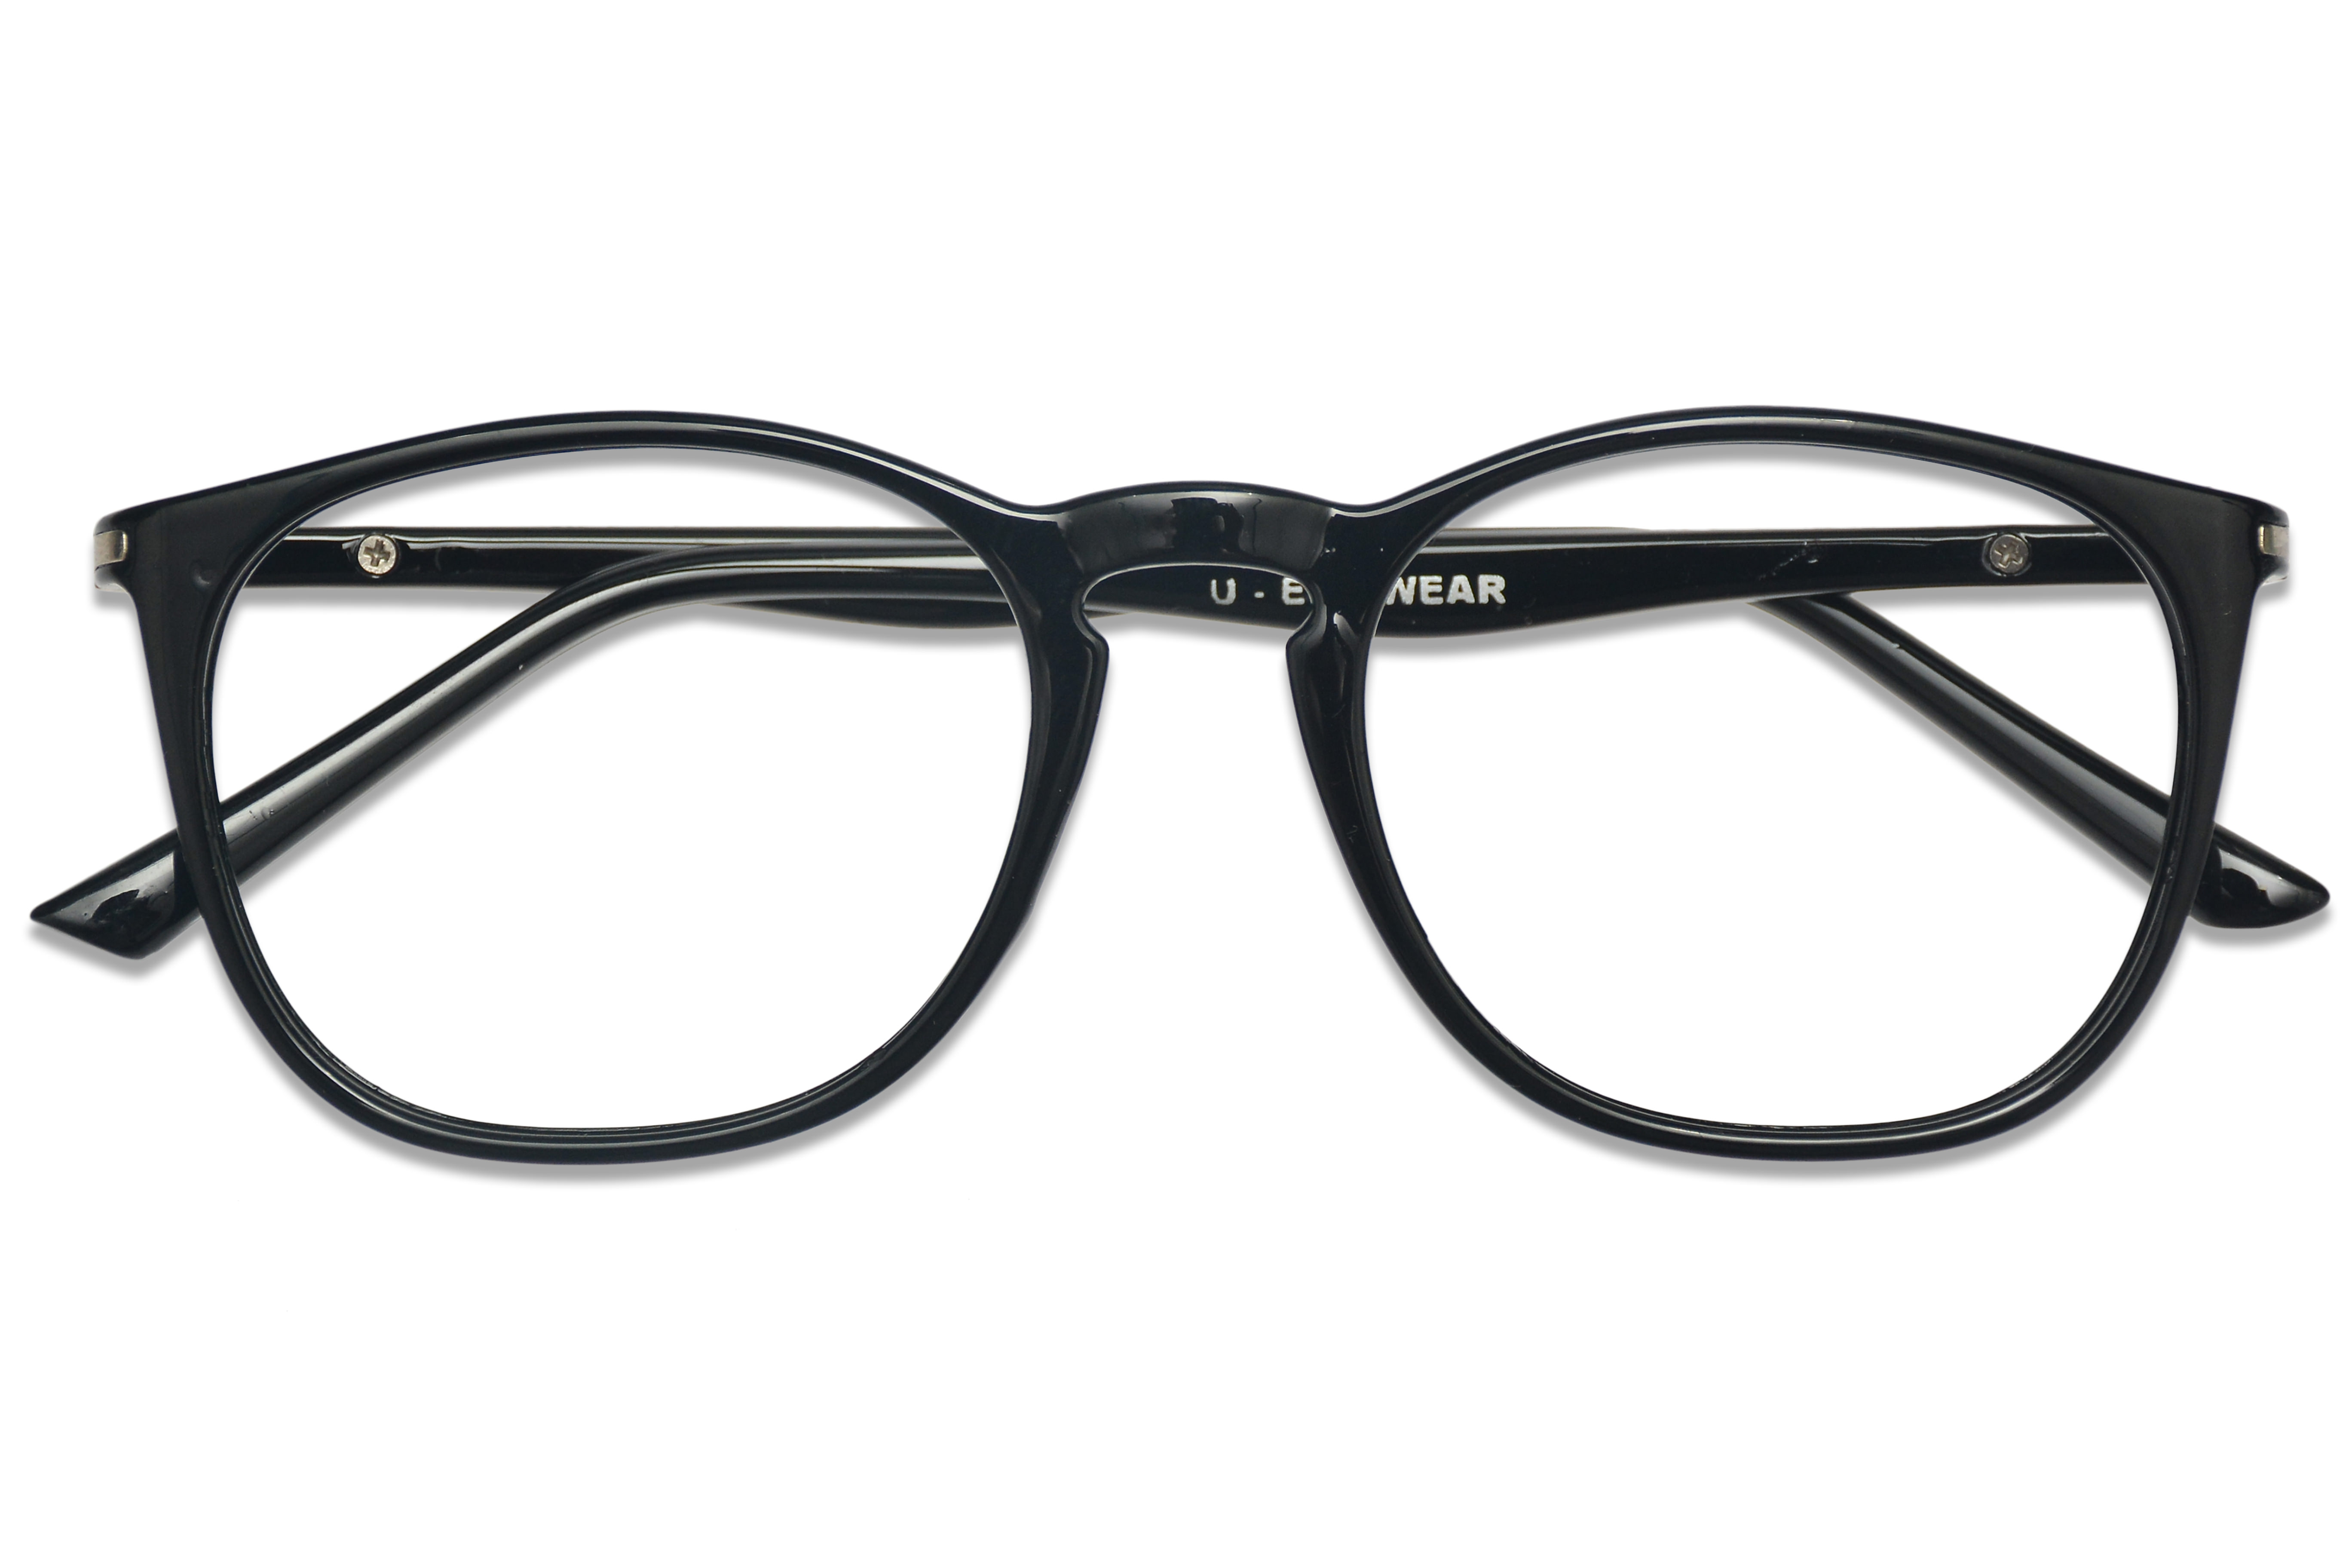 Square Eyeglasses Premium Specs Full Frame Eyeglasses For Men Size Medium 6105